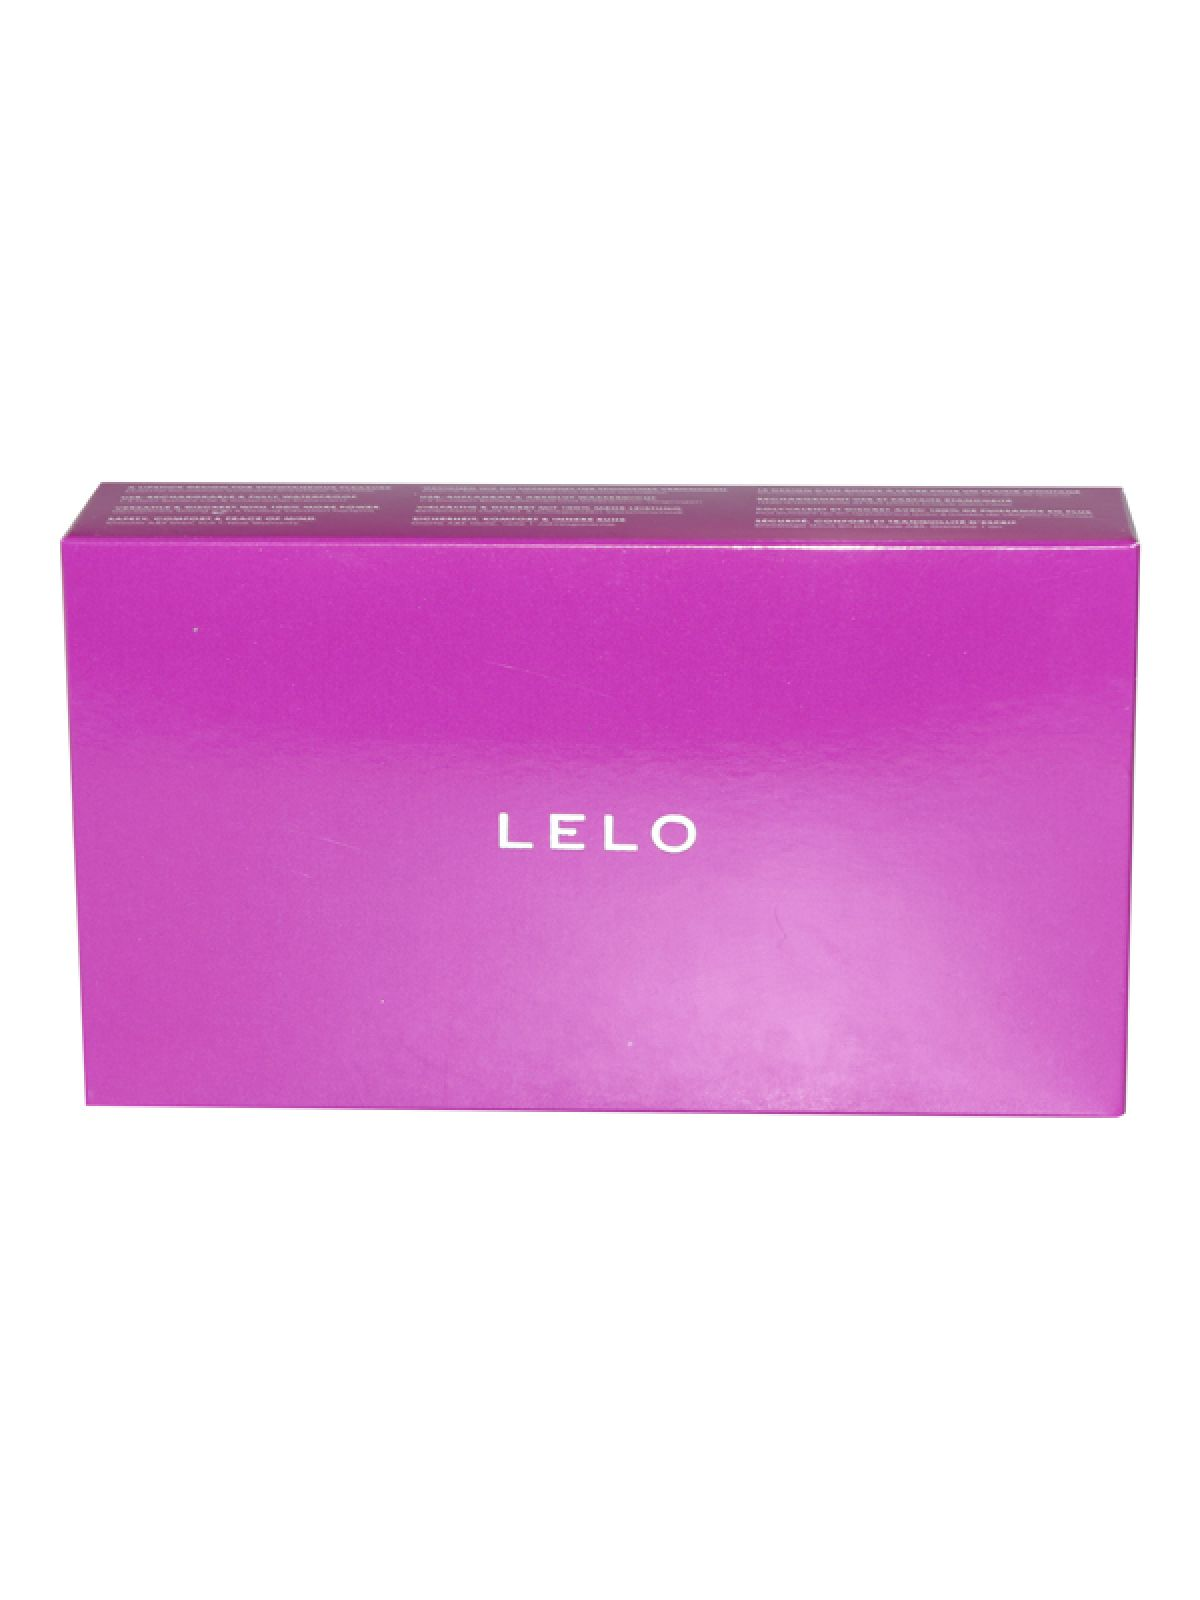 LELO LELO - 2 Cerise Mia mini-vibrators - Vibrator Bullet